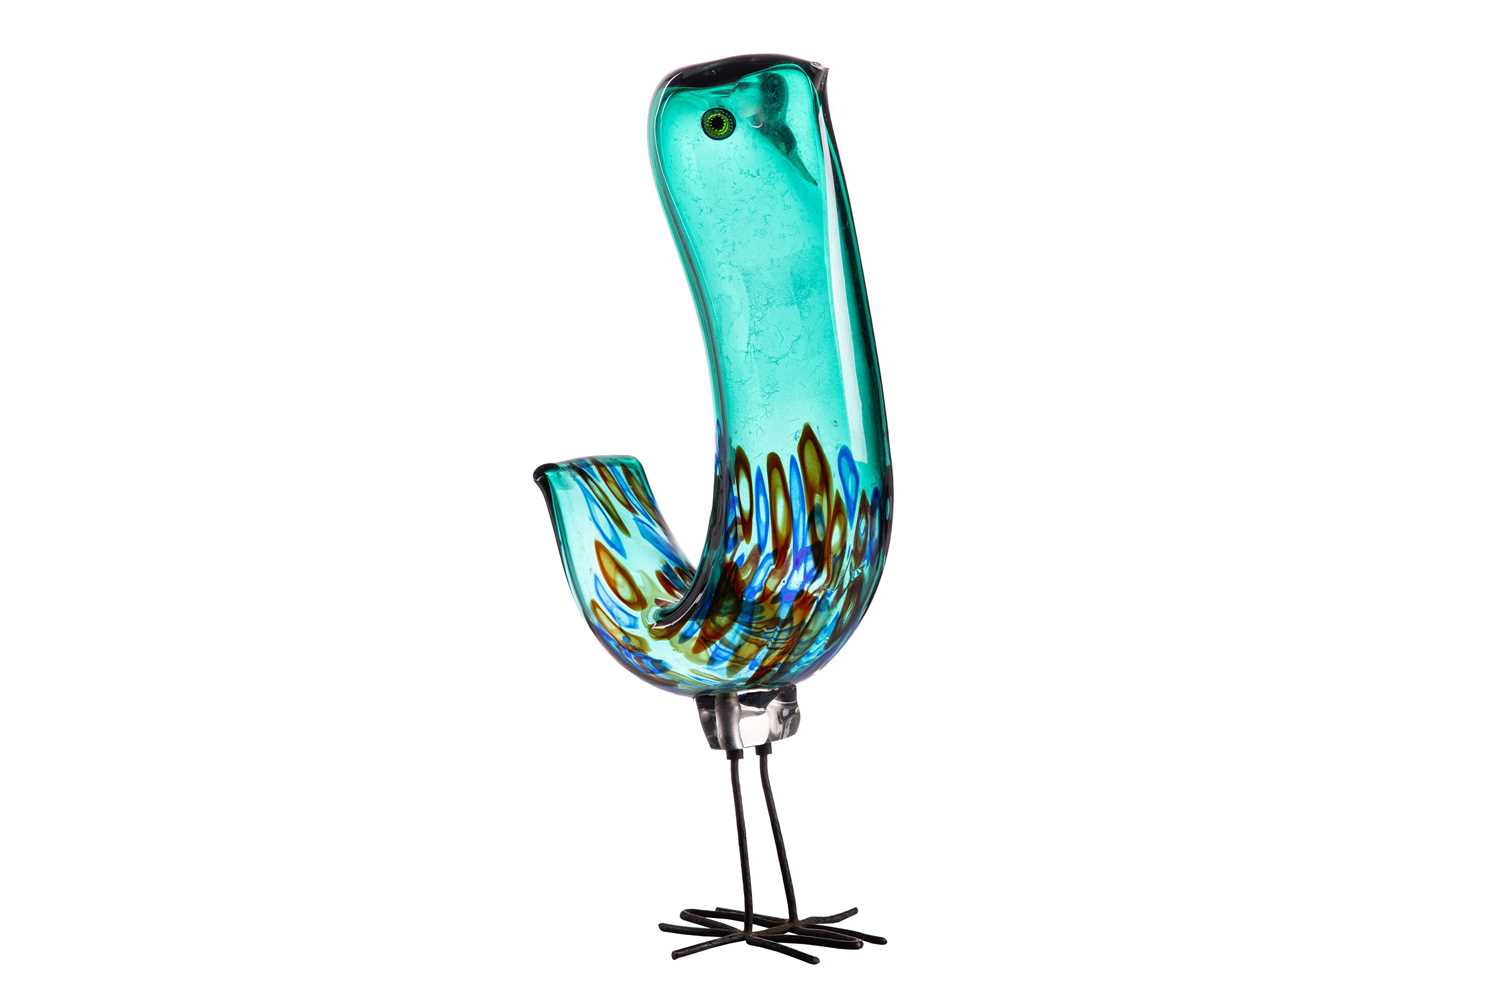 A 'Pulcino' Murano glass bird, designed by Alessandro Pianon for Murano, in green and coloured glass